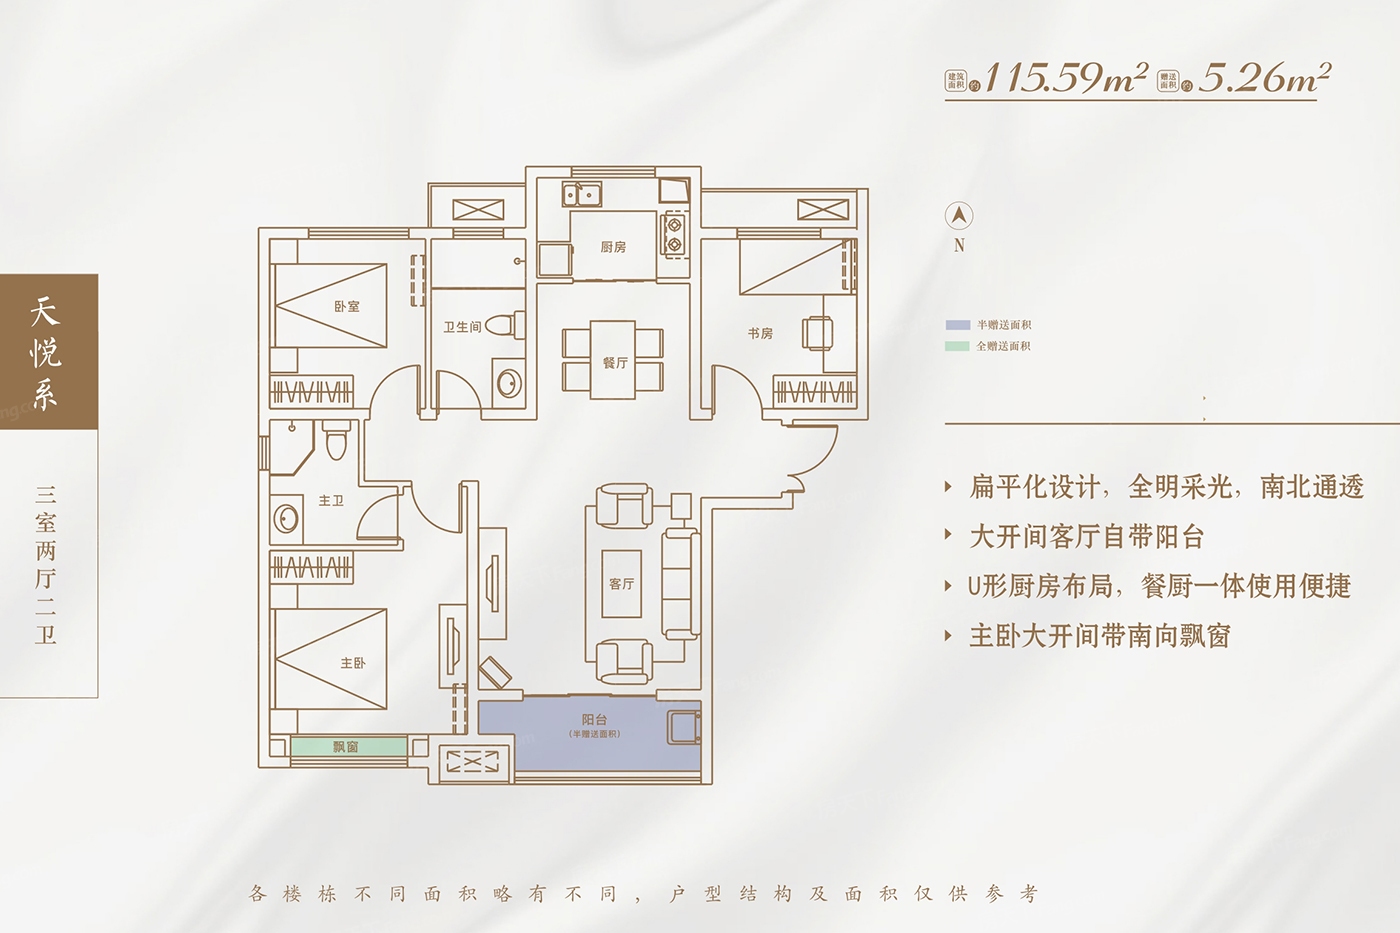 聚丰·高新首府户型类别:2居,3居,4居户型面积:8562平方米